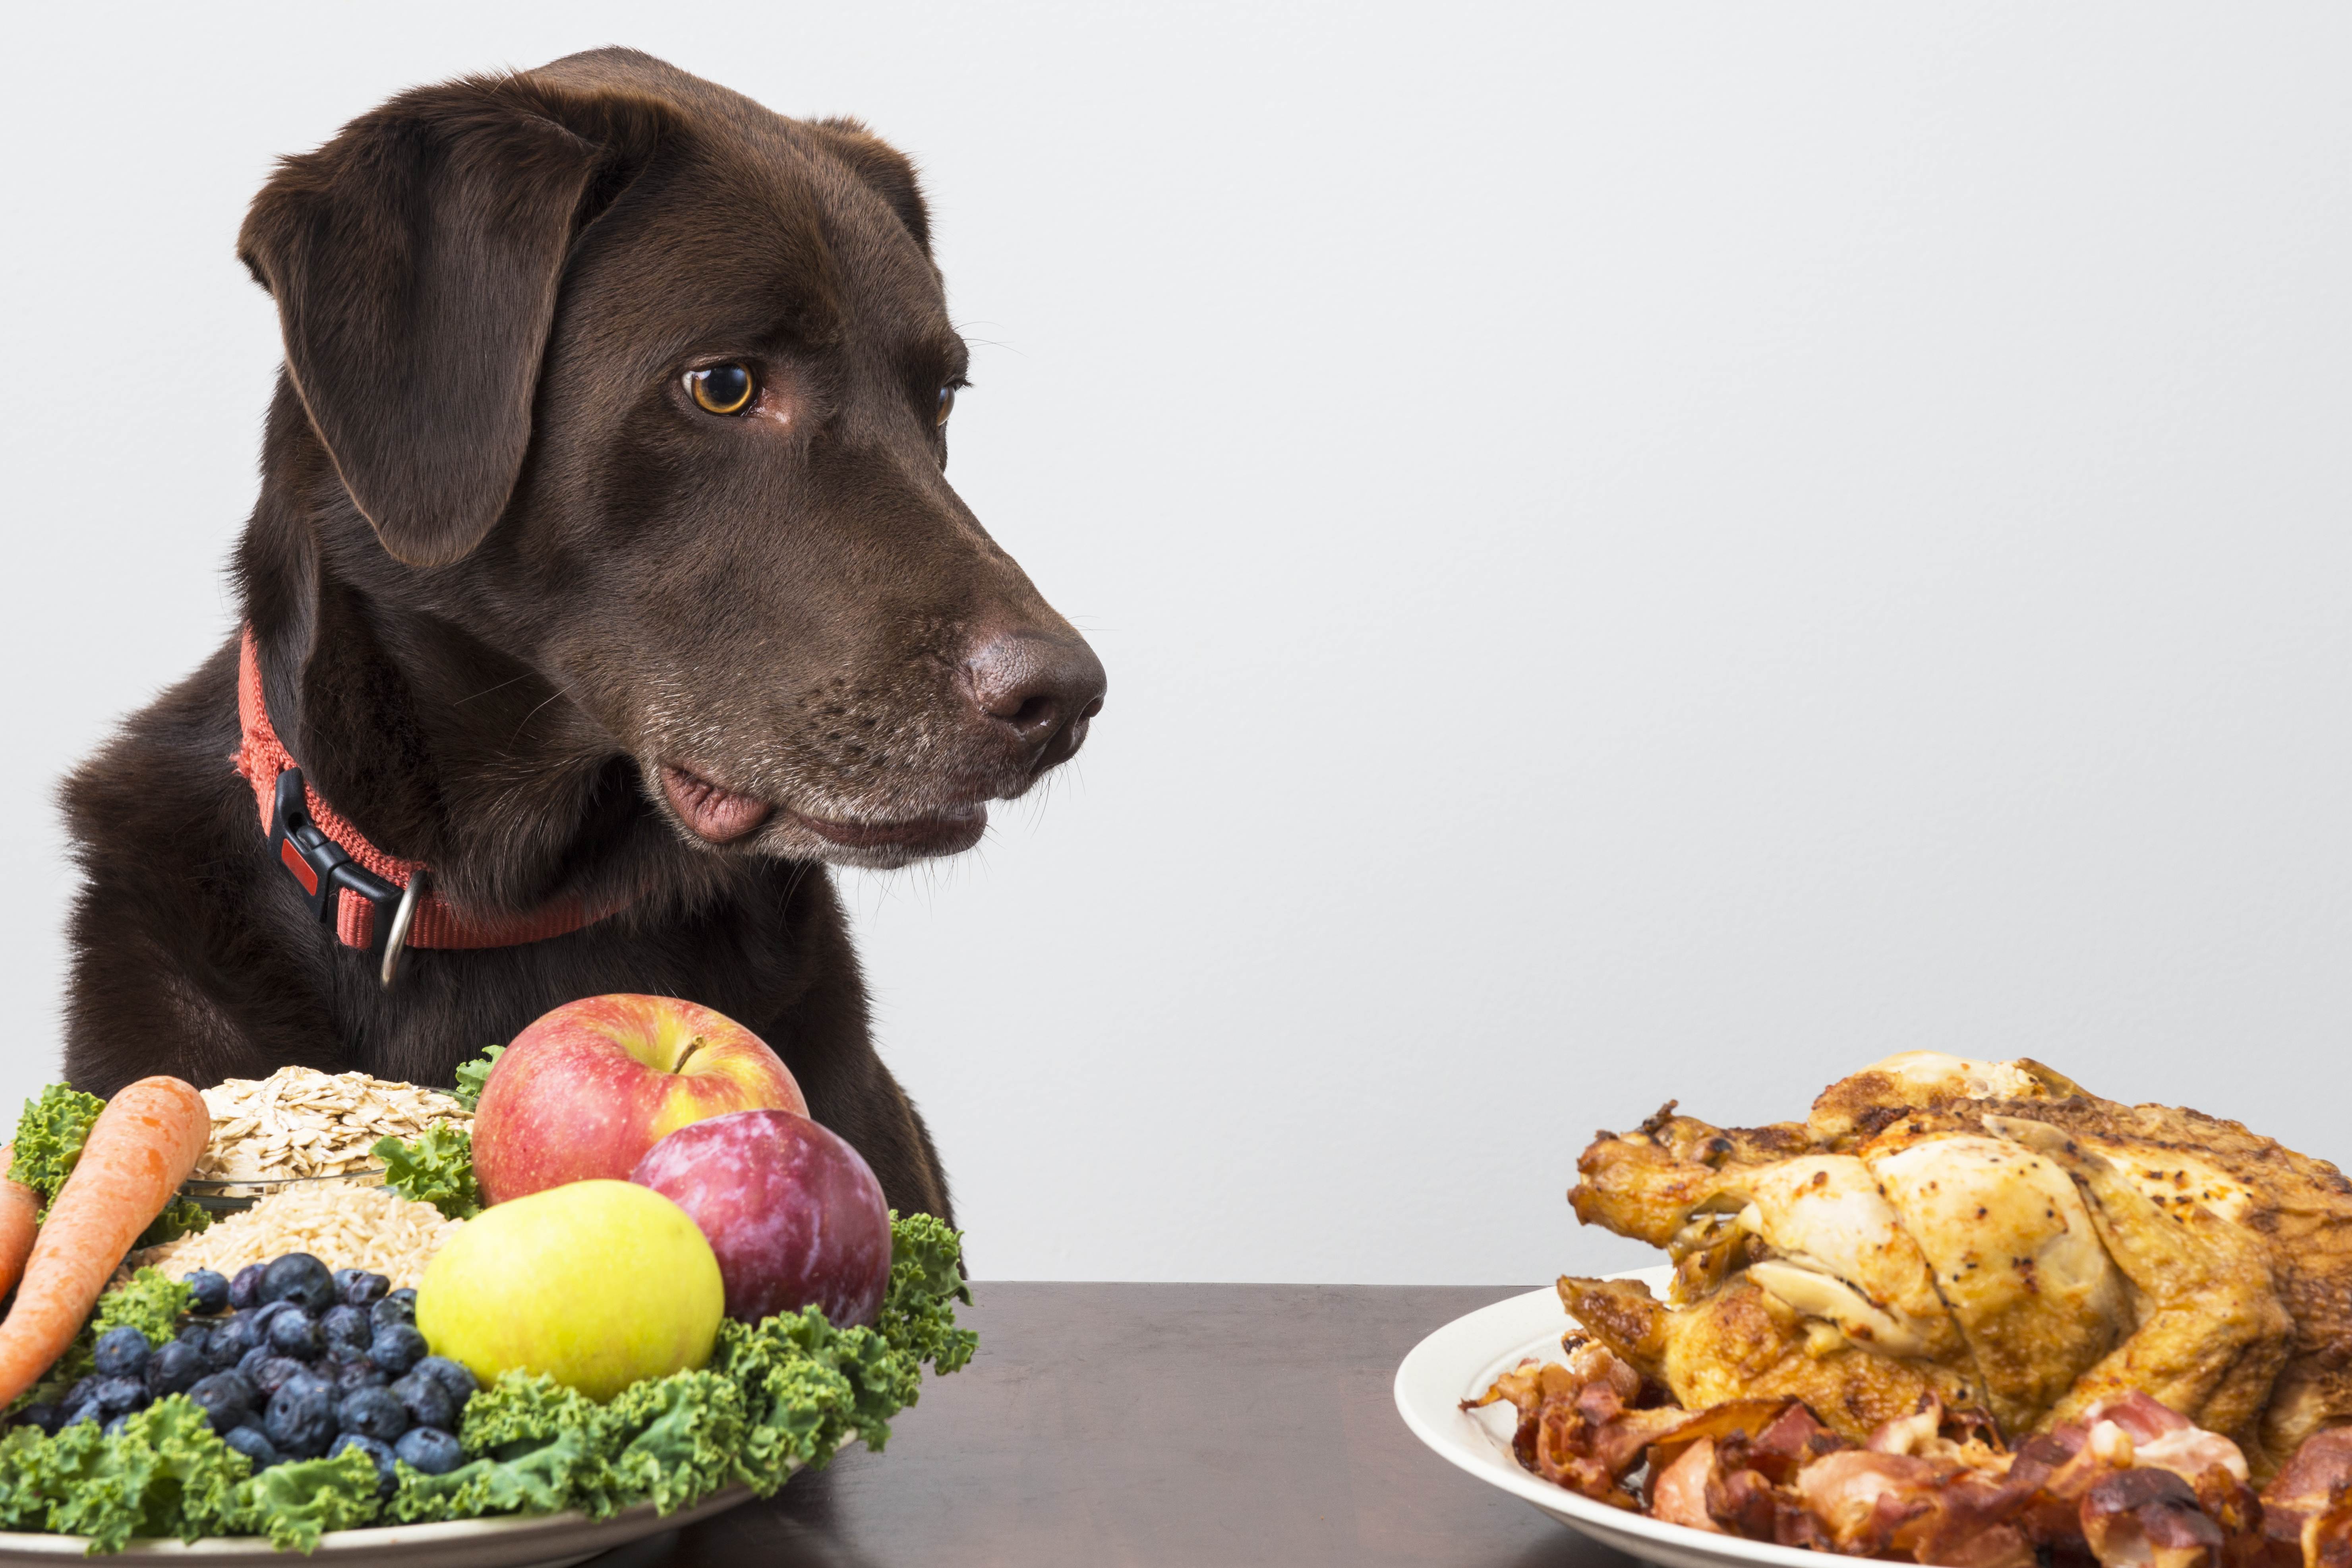 Почему нельзя кормить собаку со стола